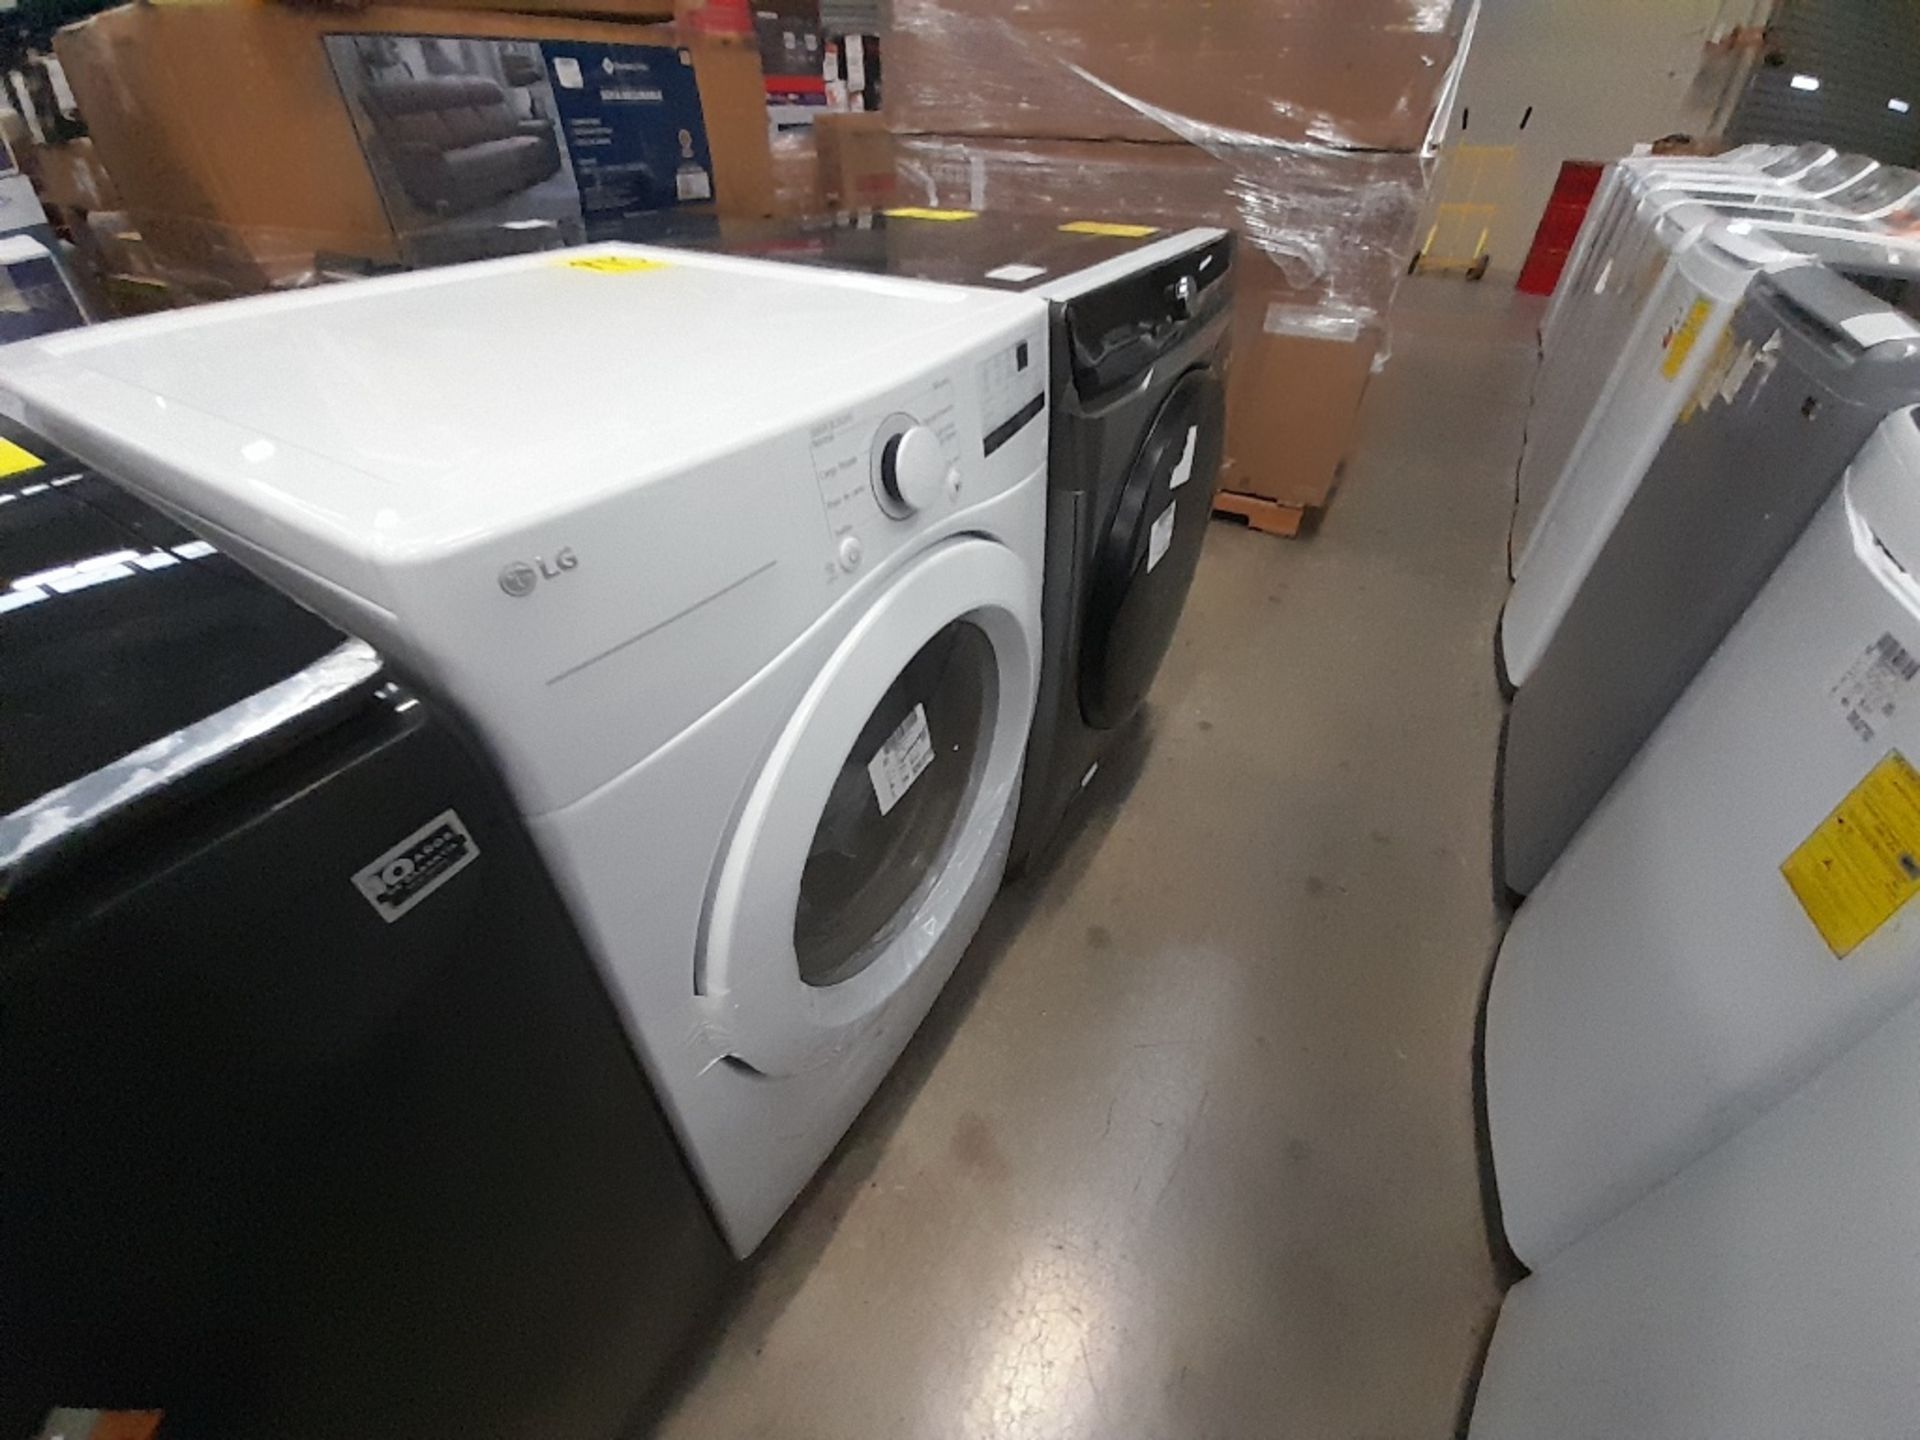 Lote de 1 lavadora y 1 Secadora contiene: 1 lavadora de 20 KG, Marca SAMSUNG, Modelo WD20T6300GP, S - Image 2 of 7